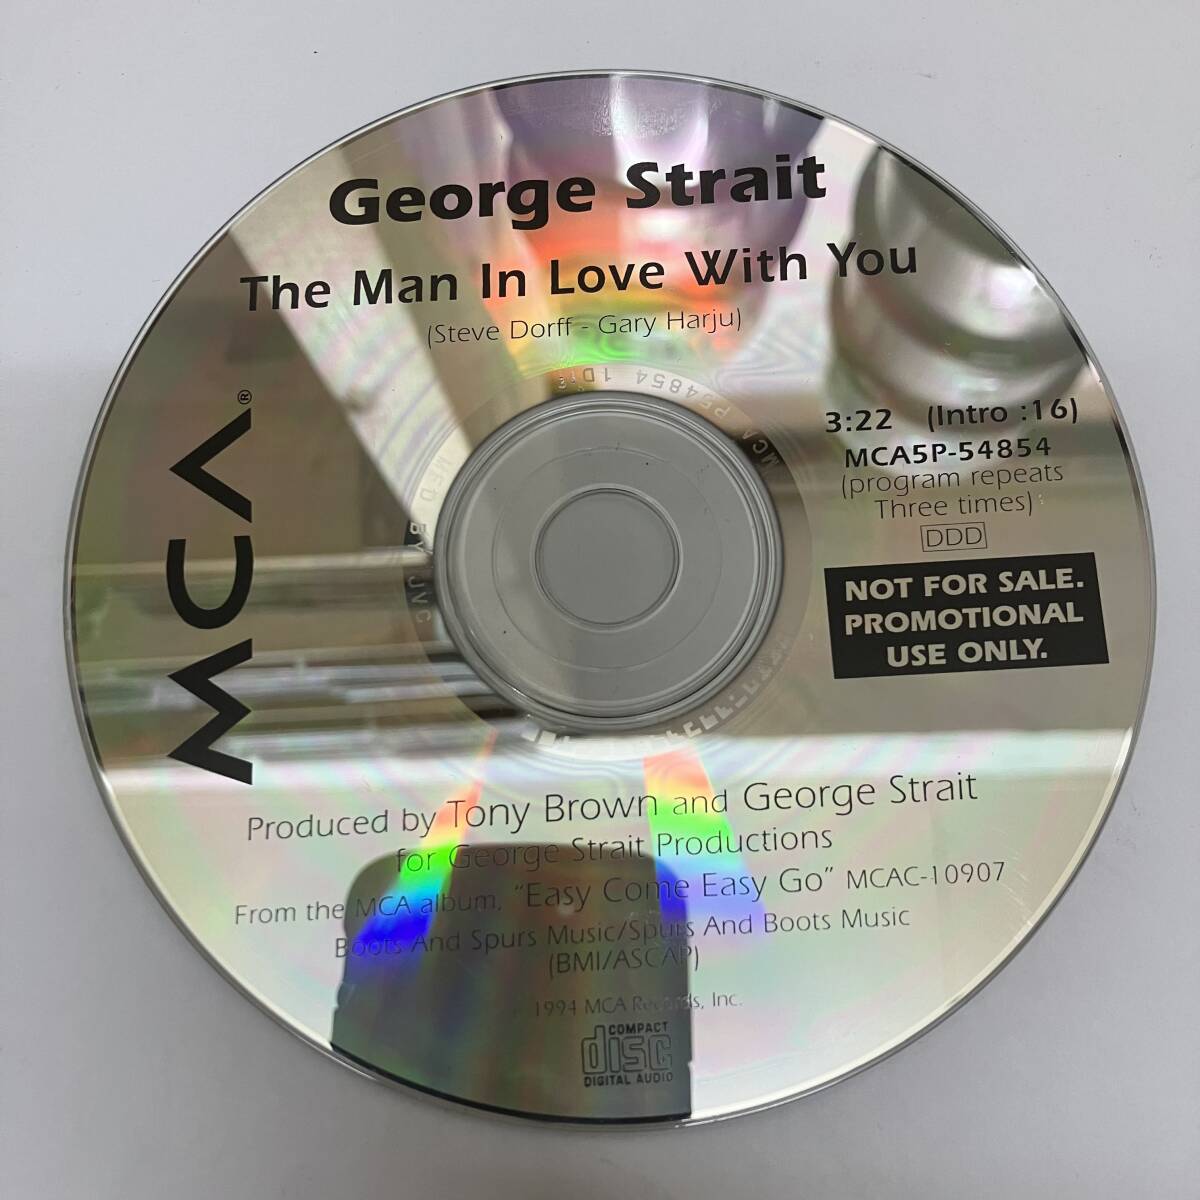 裸35 ROCK,POPS GEORGE STRAIT - THE MAN IN LOVE WITH YOU シングル,PROMO盤 CD 中古品_画像1